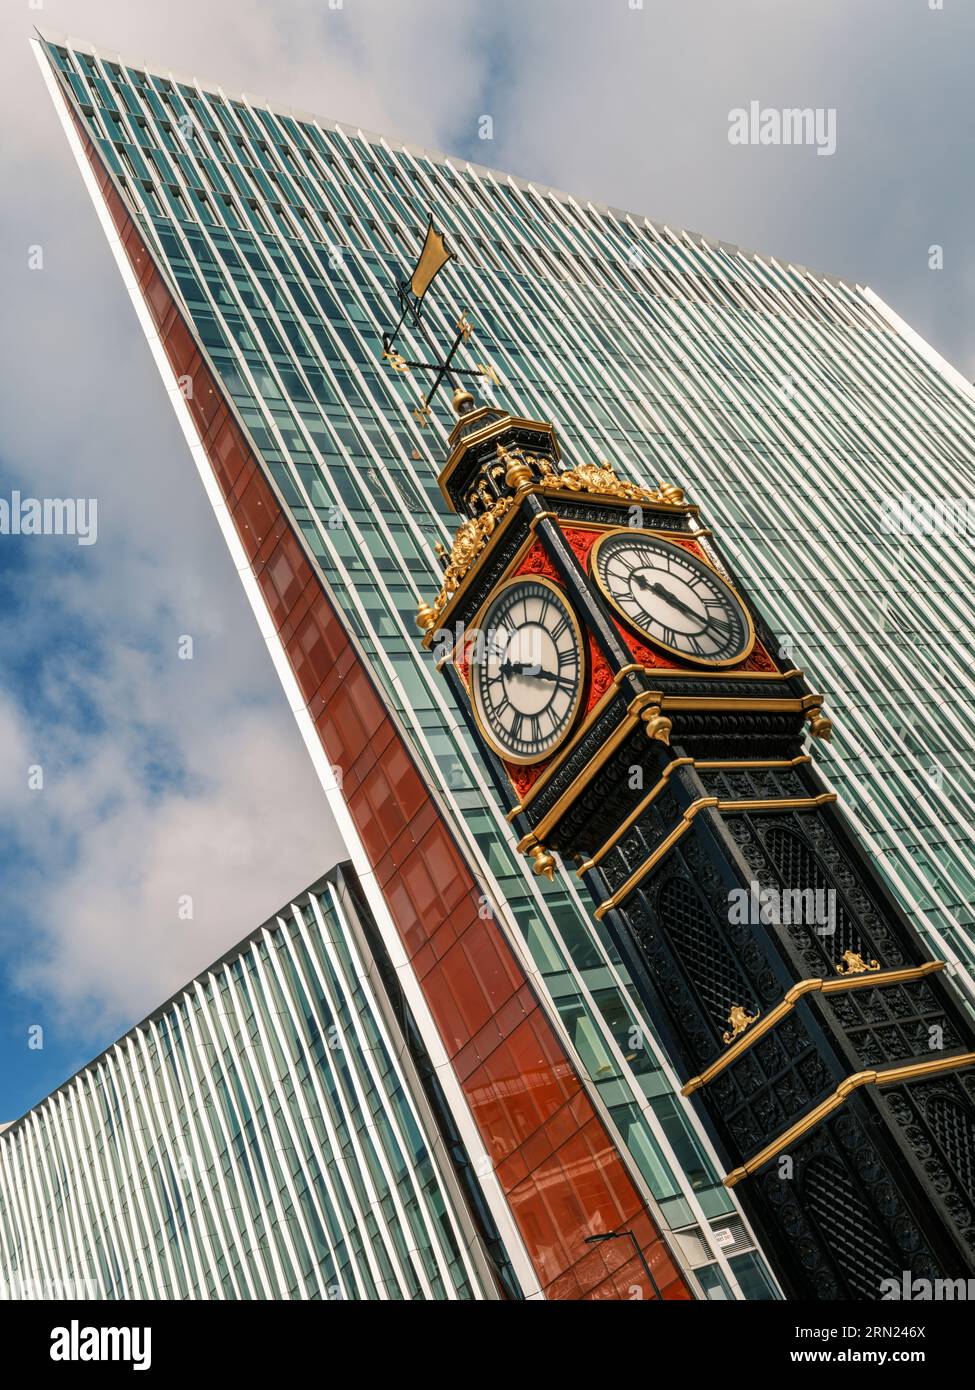 Westminster, centre de Londres, Angleterre. 'Little Ben' est une tour d'horloge miniature en fonte située en face du théâtre Victoria Palace à l'intersecti Banque D'Images